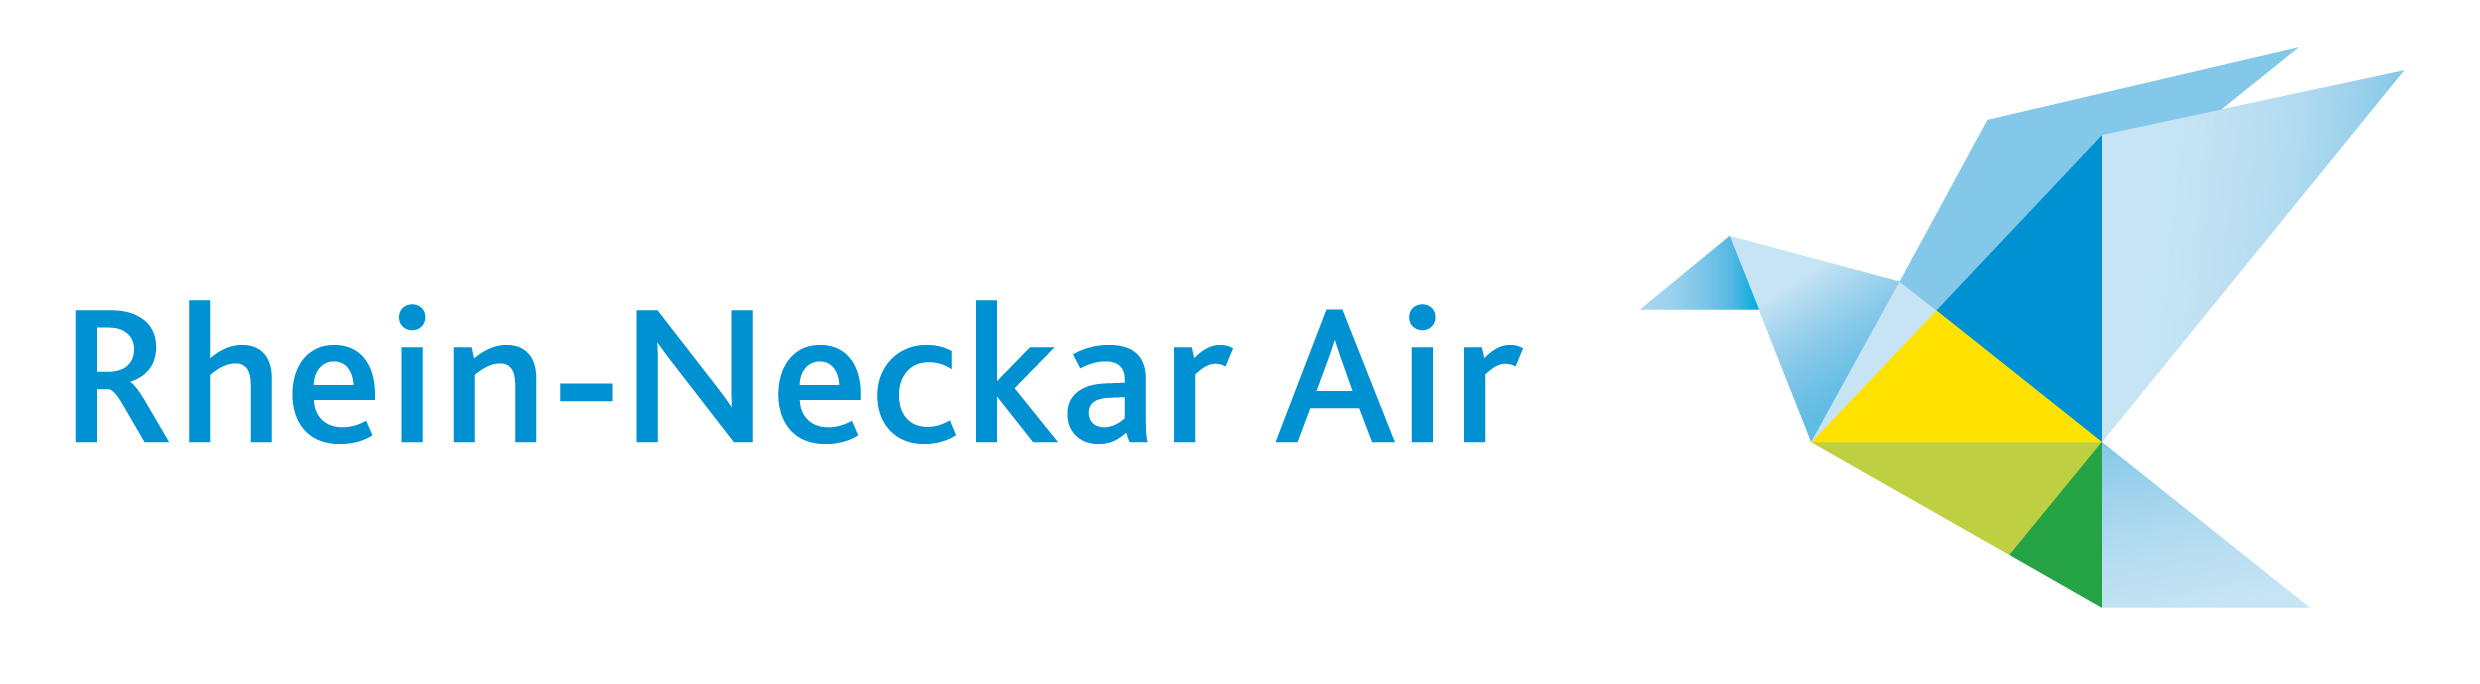 Rhein-Neckar Air Logo